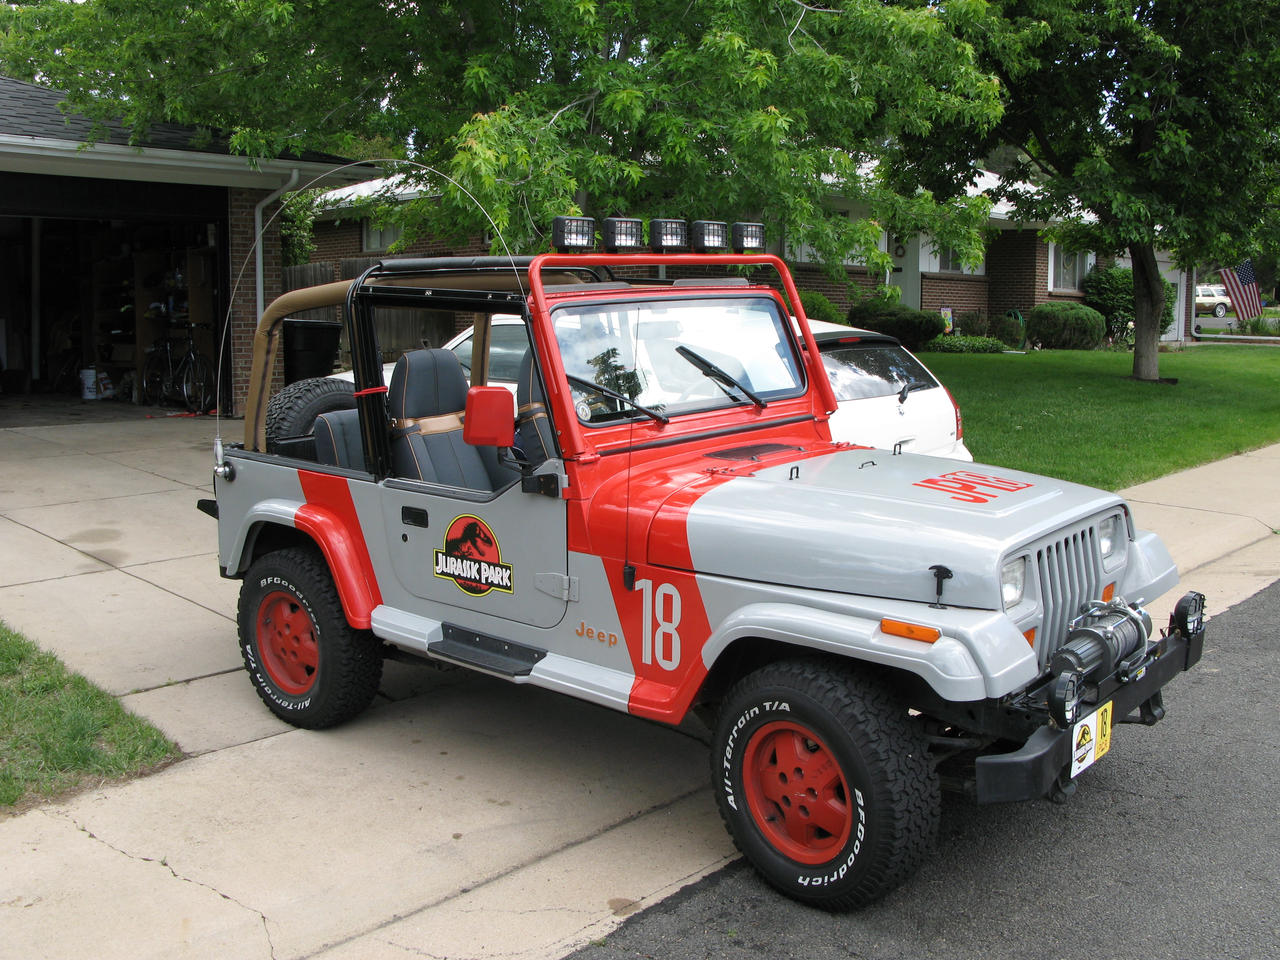 Jurassic Park Jeep Wrangler 37 by Boomerjinks on DeviantArt